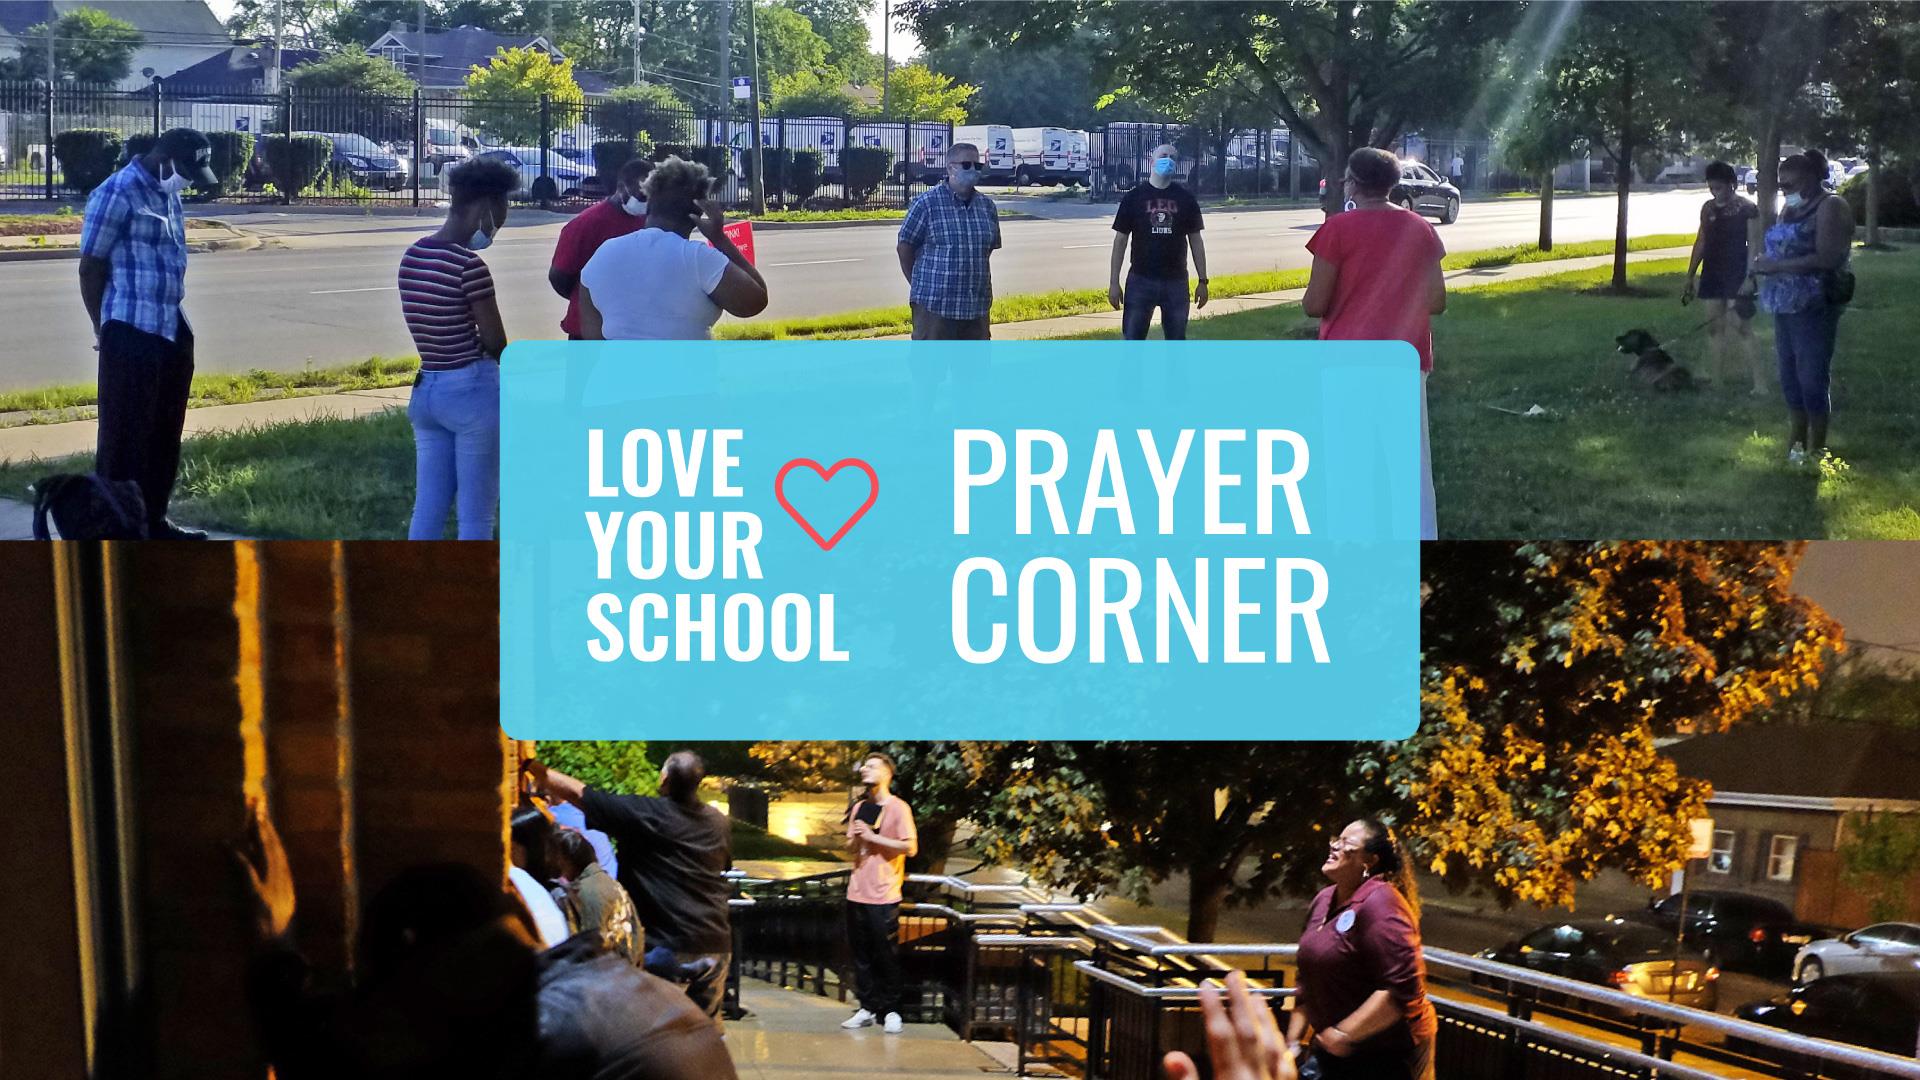 Love Your School Prayer Corner - Parkway Gardens